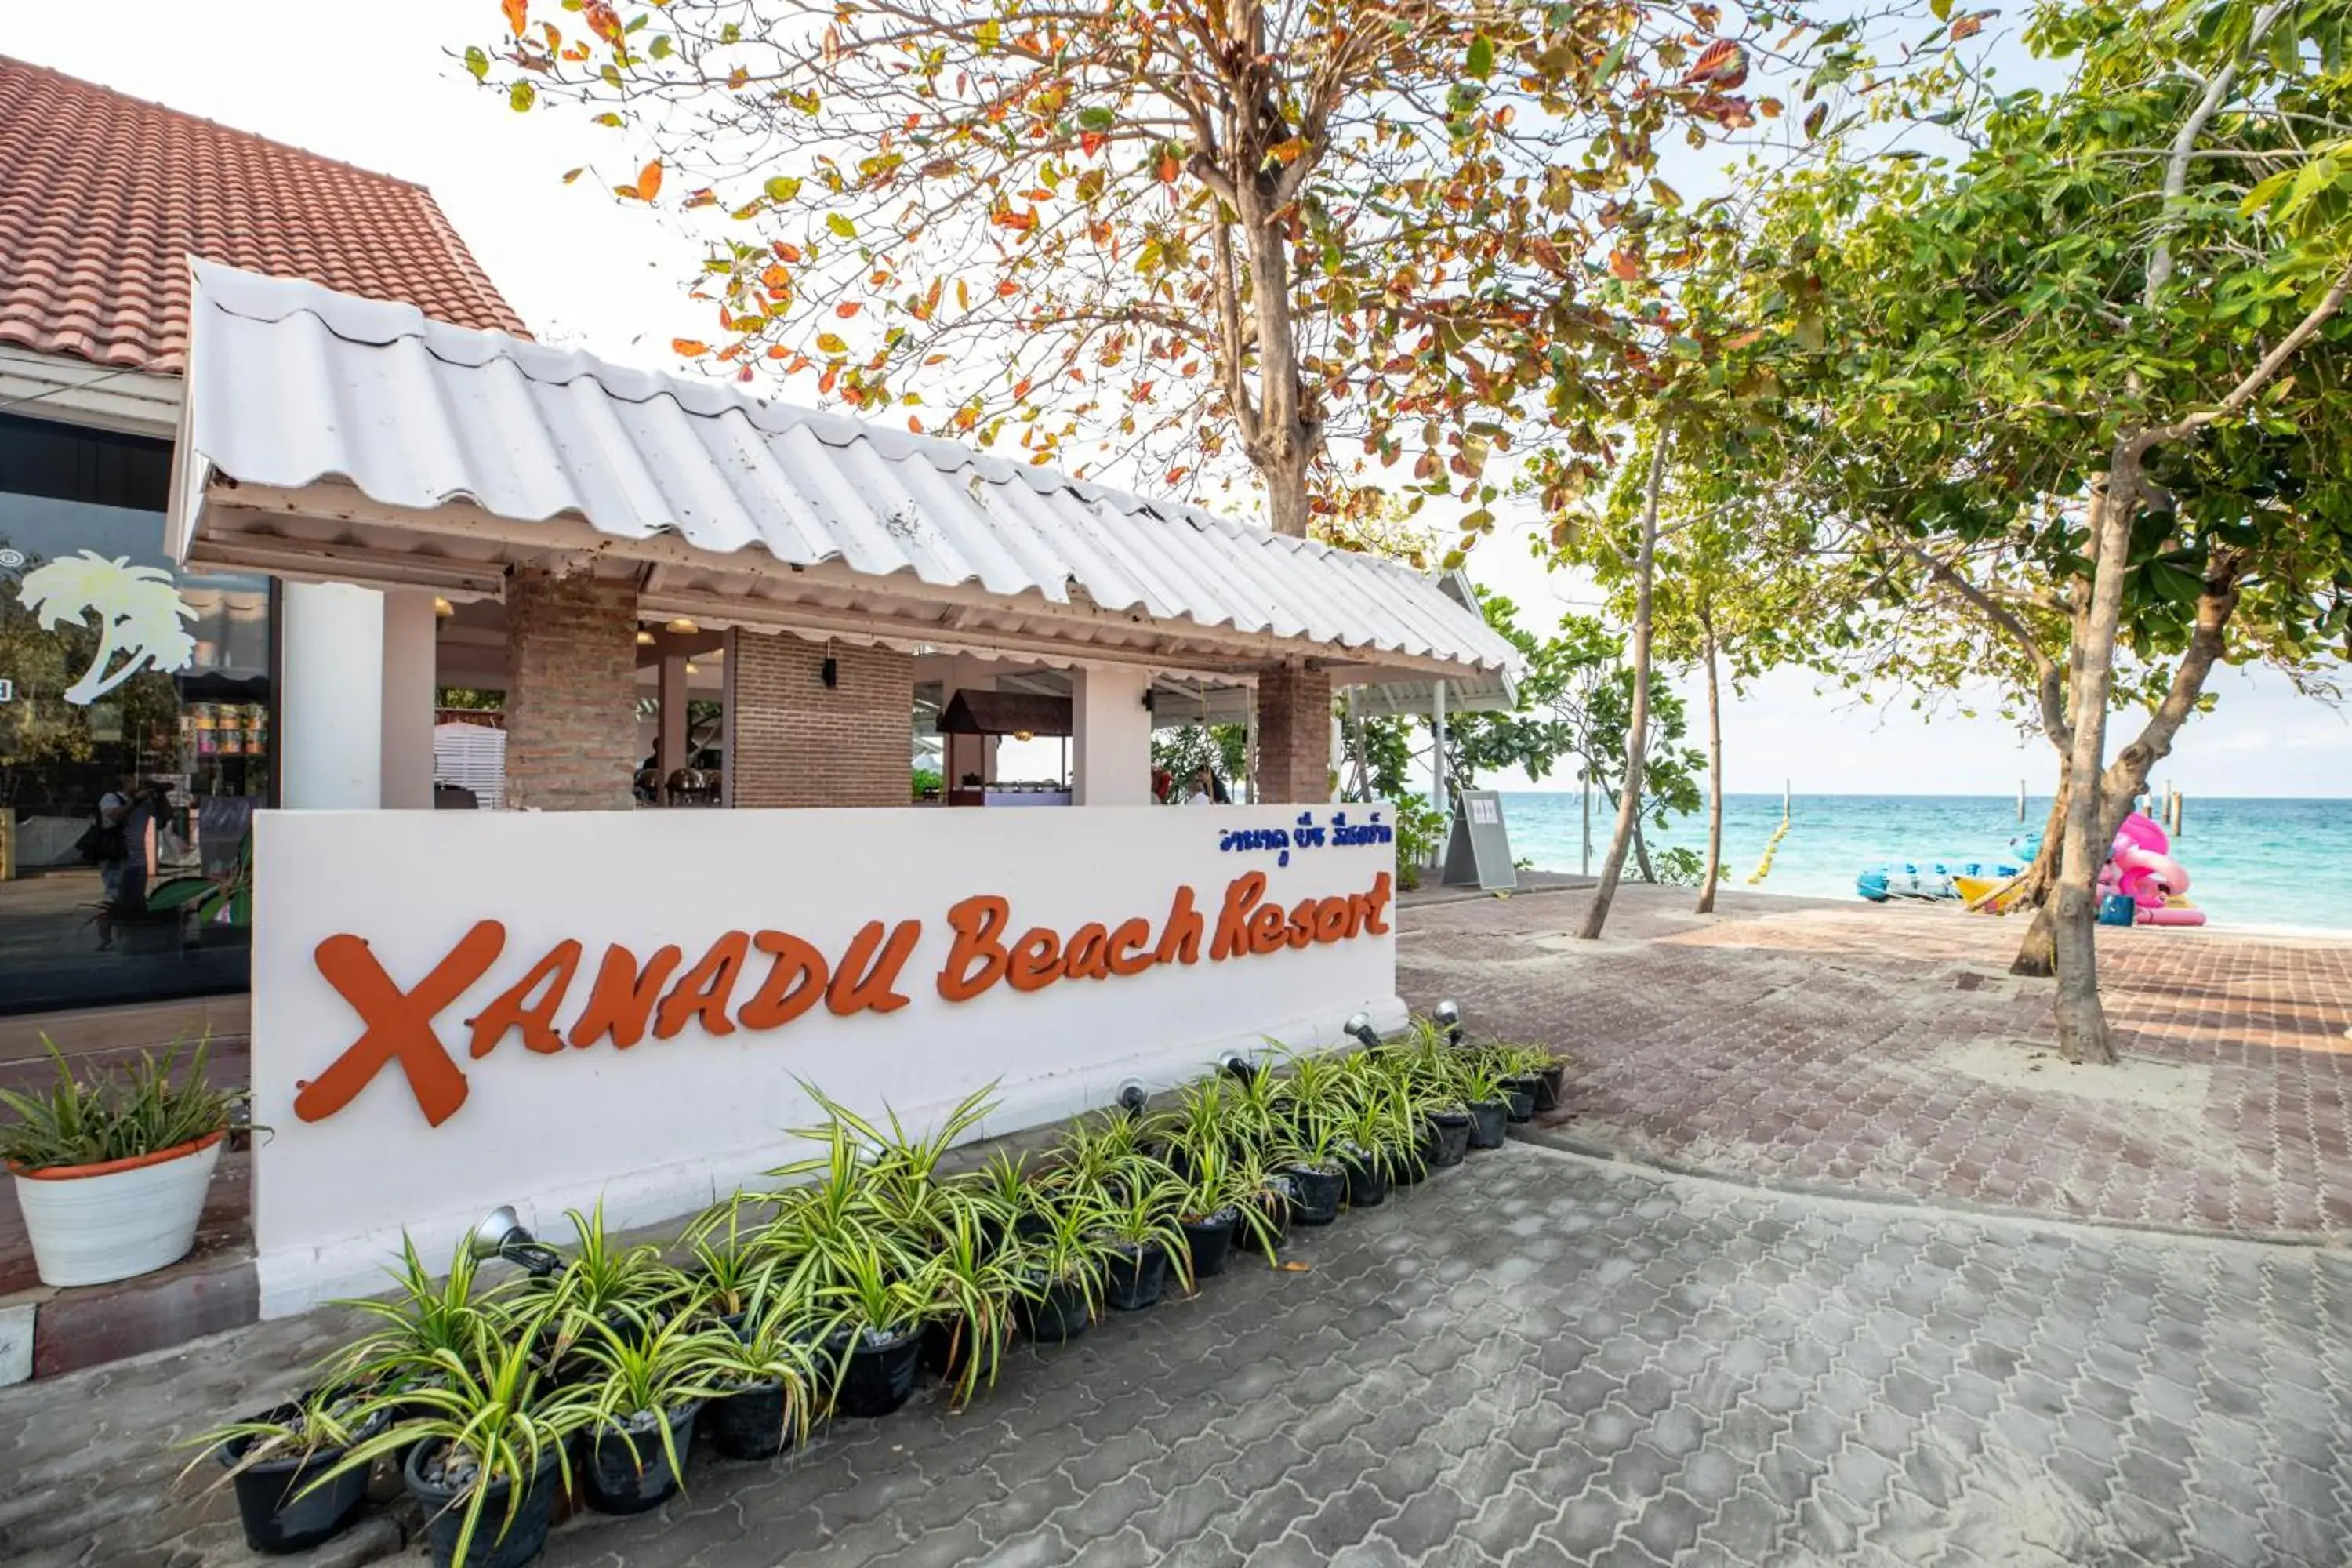 Property logo or sign in Xanadu Beach Resort Koh Lan